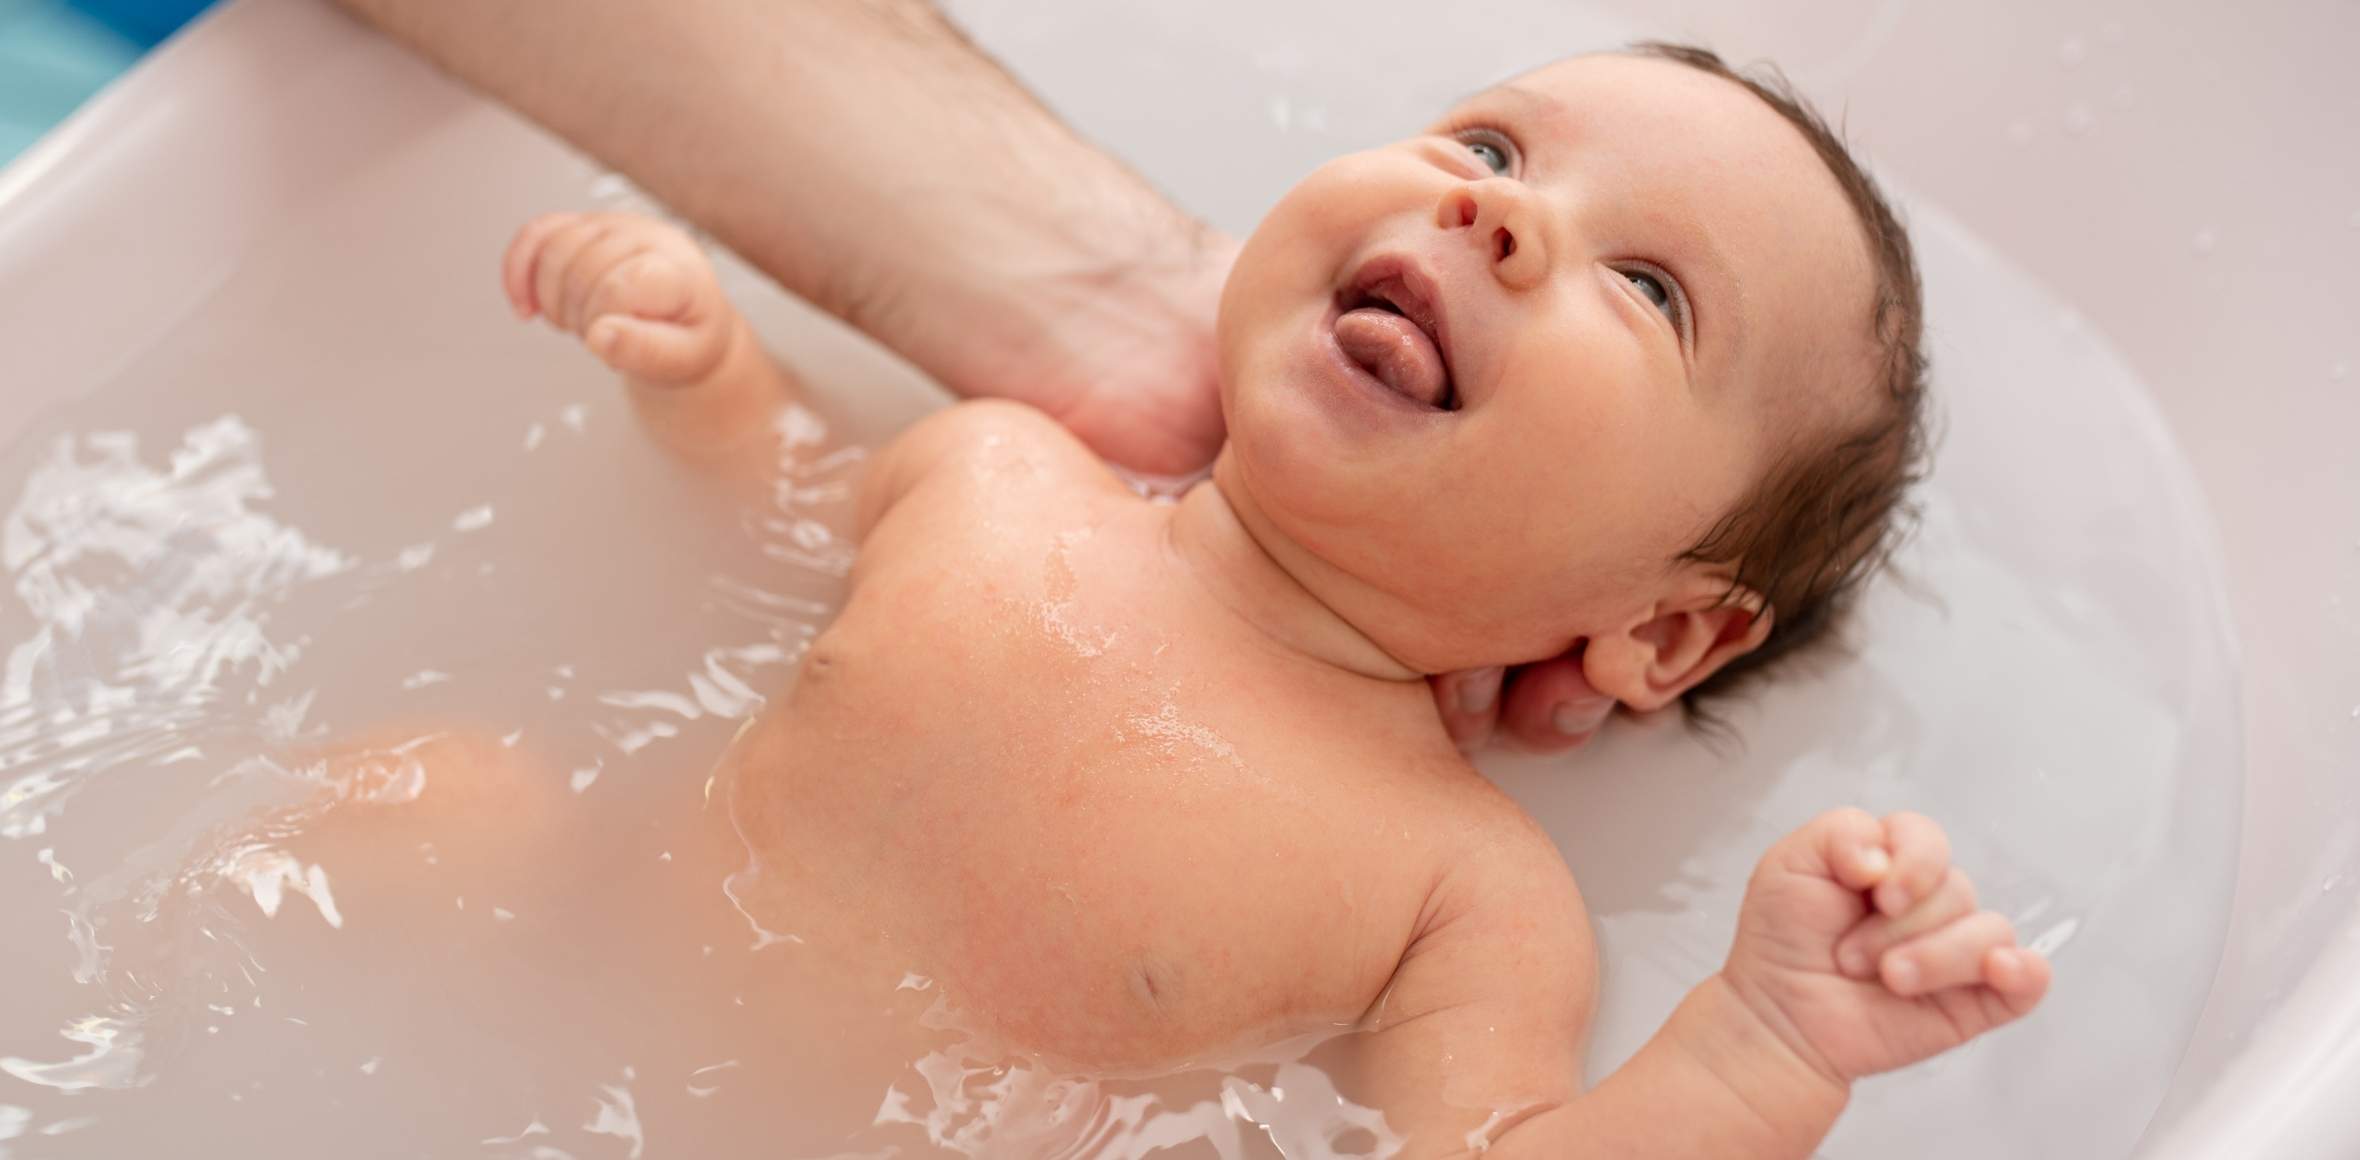 Baby liegt lachend in einer Badewanne